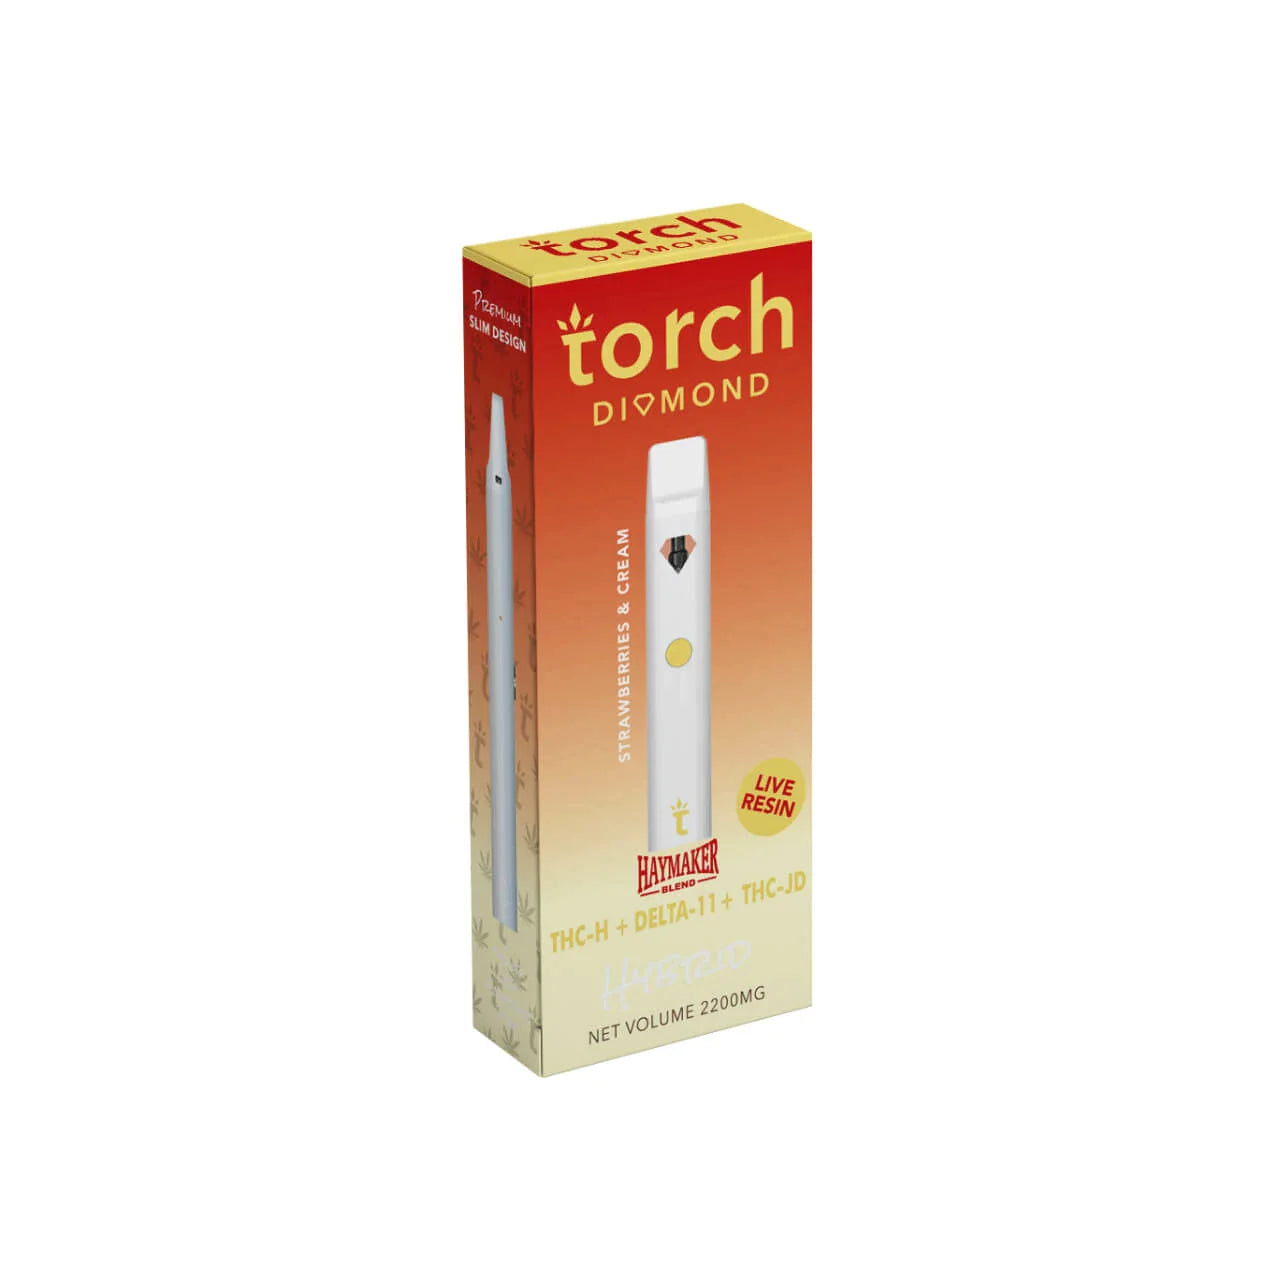 Torch Diamond Strawberries & Cream THC-h + Delta 11 + THC-jd Disposable (2.2g) Best Price